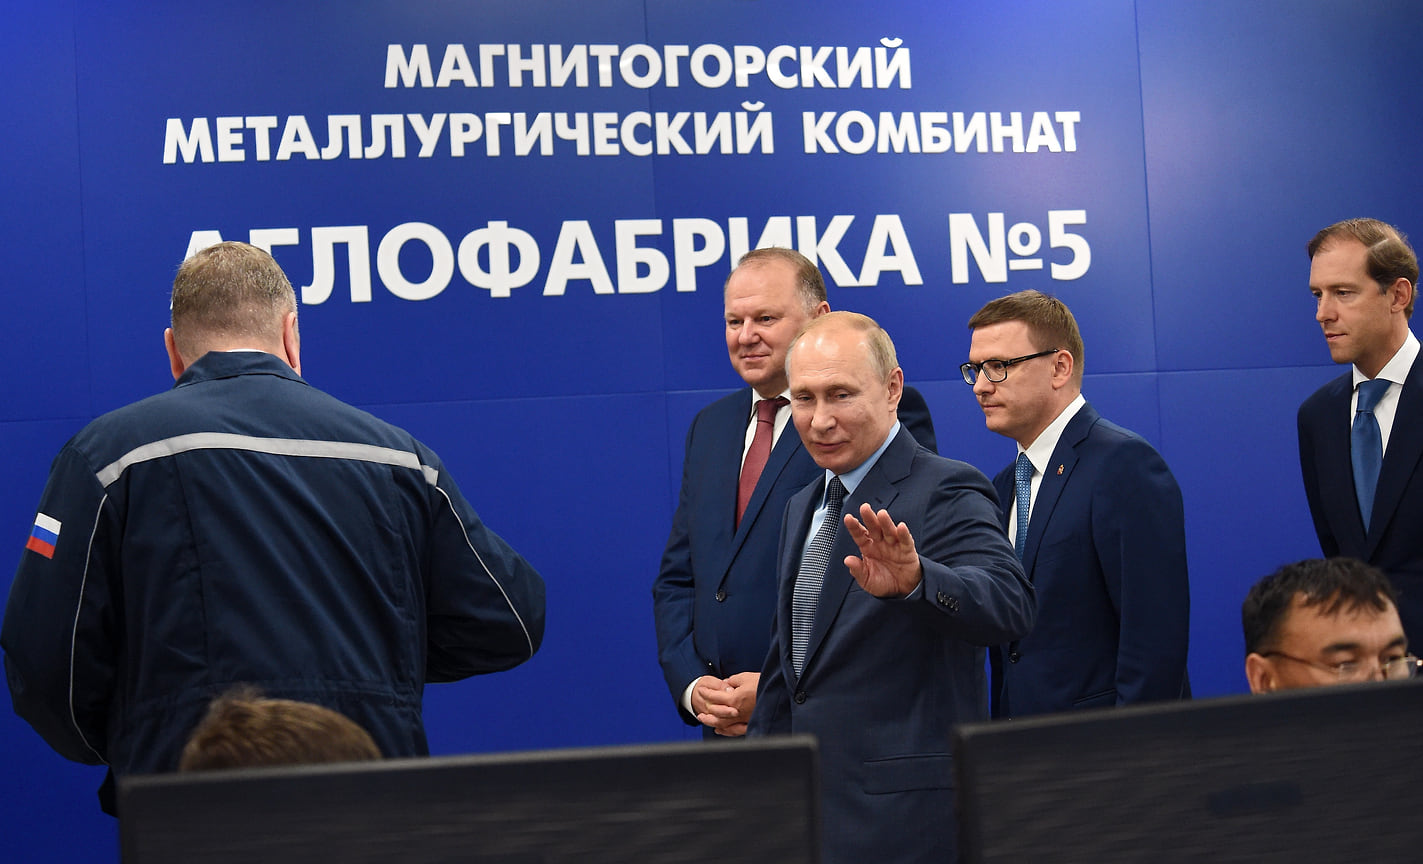 О переносе саммитов ШОС и БРИКС из Челябинска в Санкт-Петербург Владимир Путин объявил во время визита в Магнитогорск